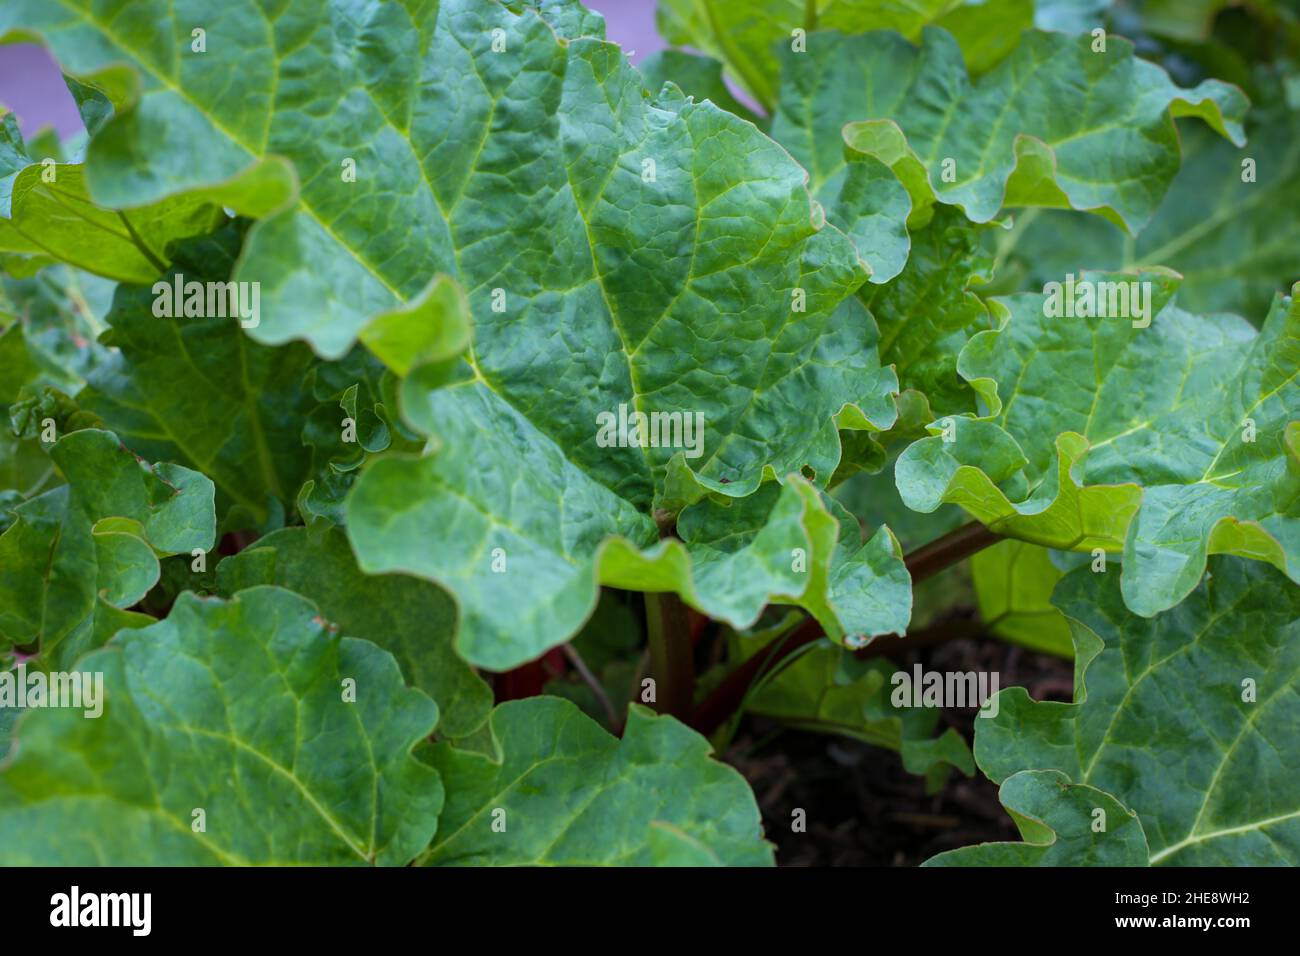 Eine gesunde Rhabarberpflanze, die in einem Bio-Garten wächst und die leuchtend grünen Blätter zeigt, die giftig zu fressen sind. Stockfoto